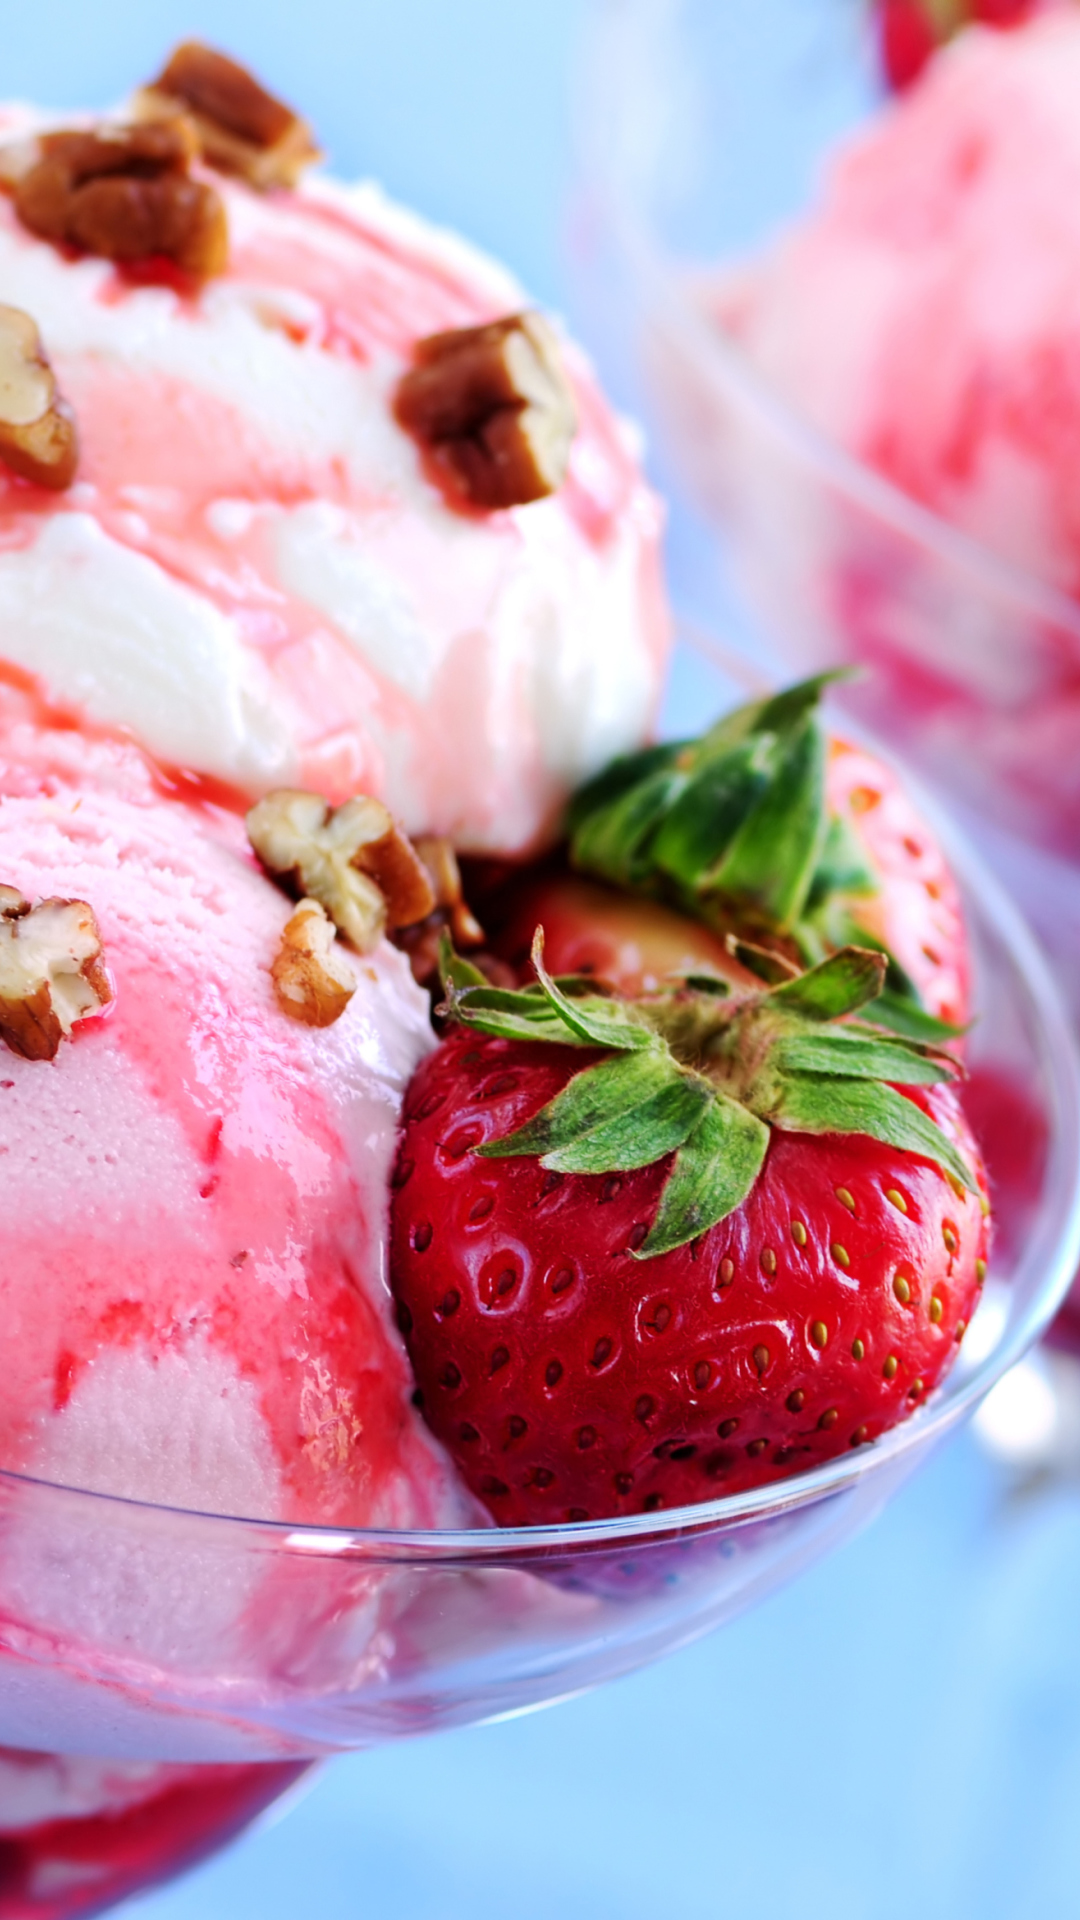 Das Strawberry Ice Cream Wallpaper 1080x1920